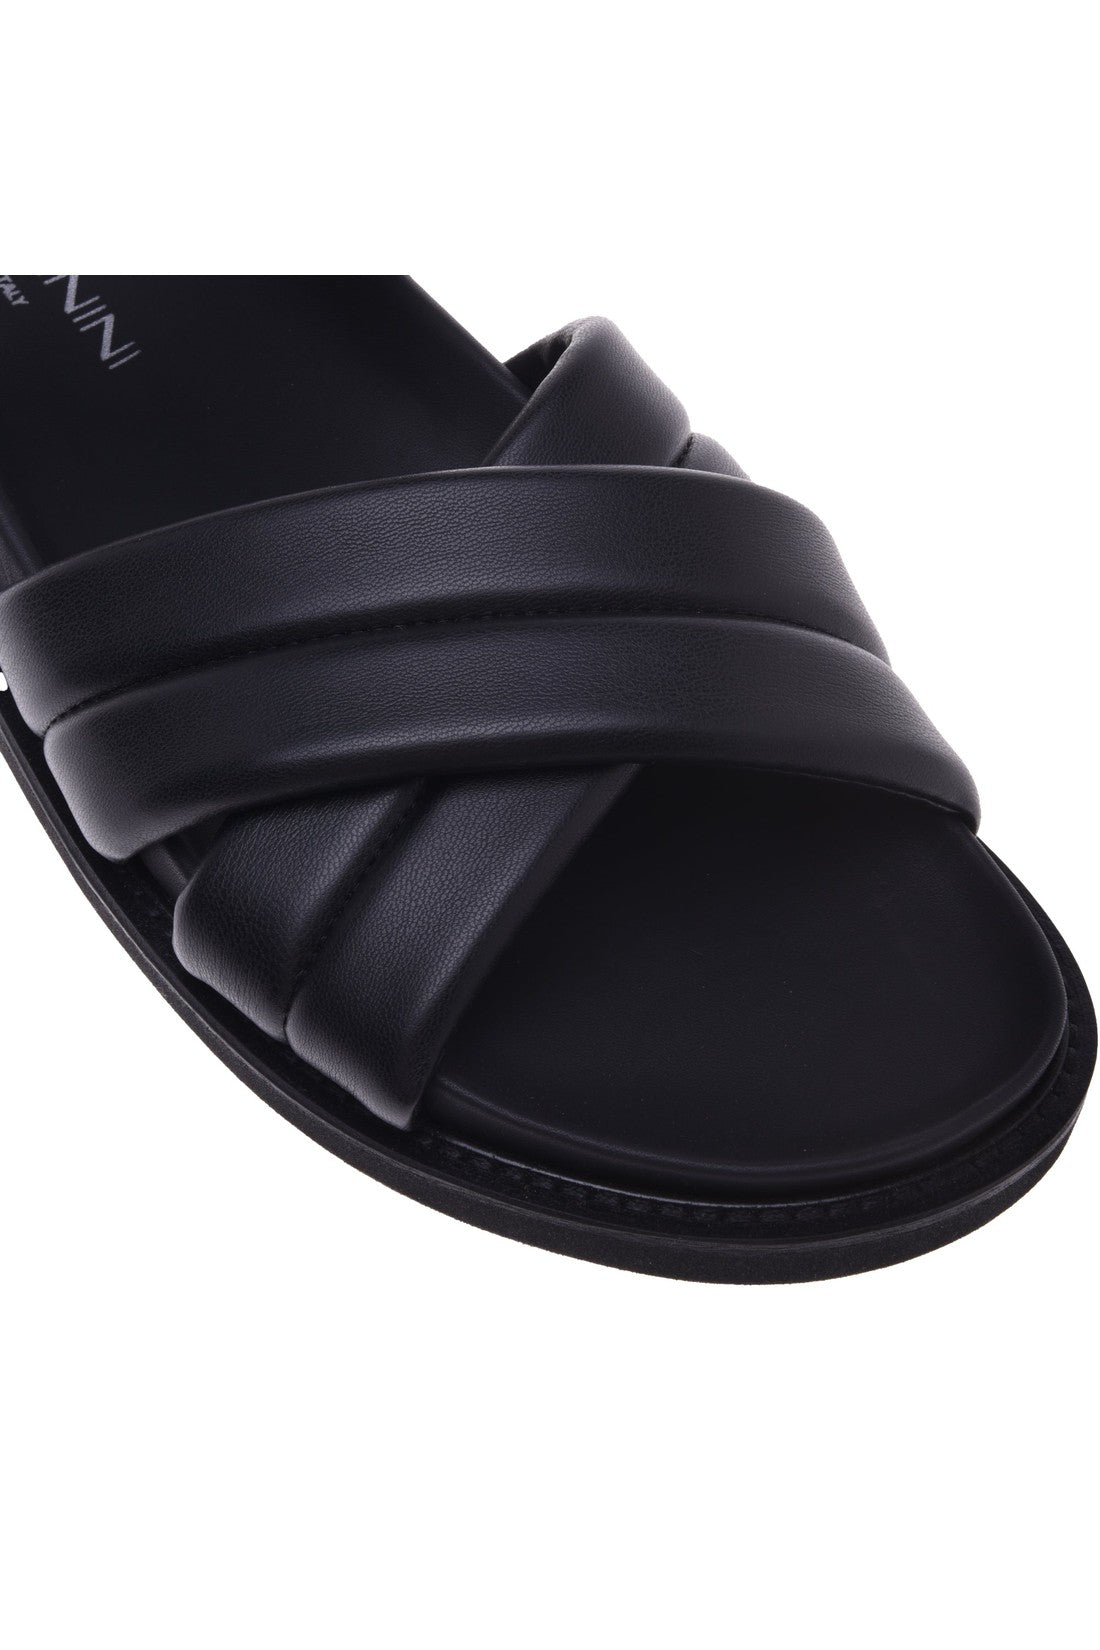 Sandal in black nappa leather